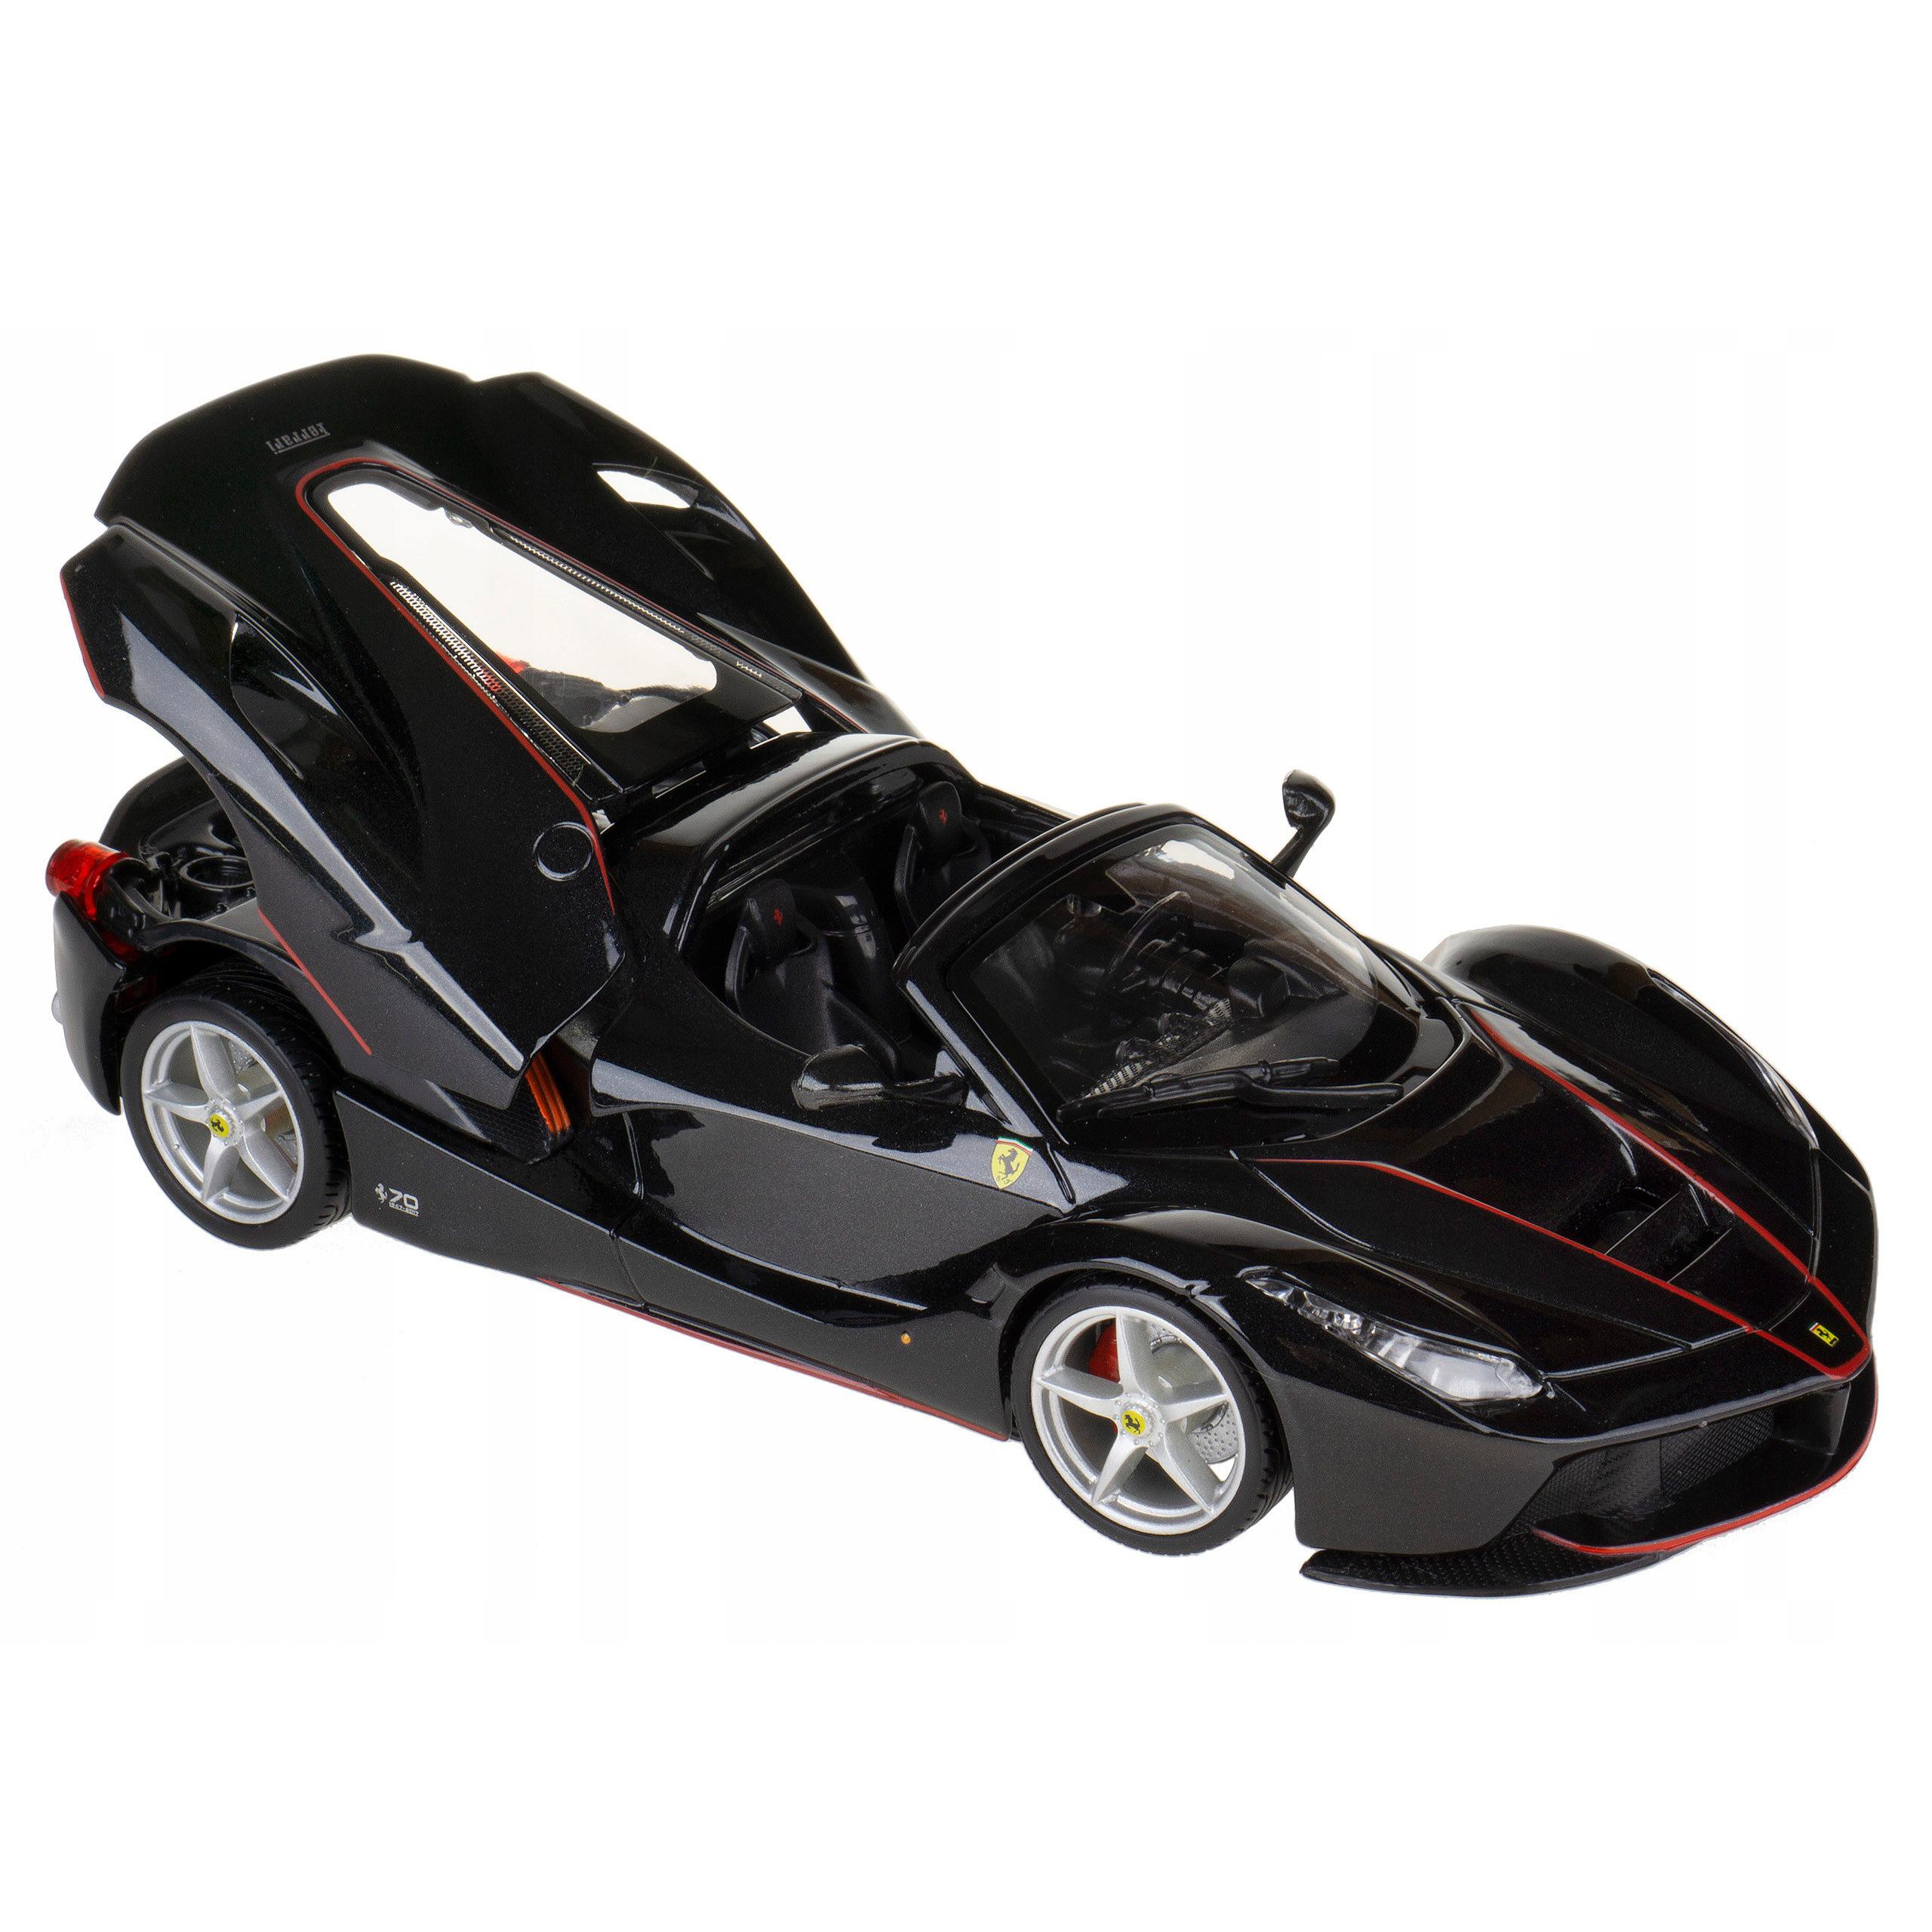 Ferrari 1 24